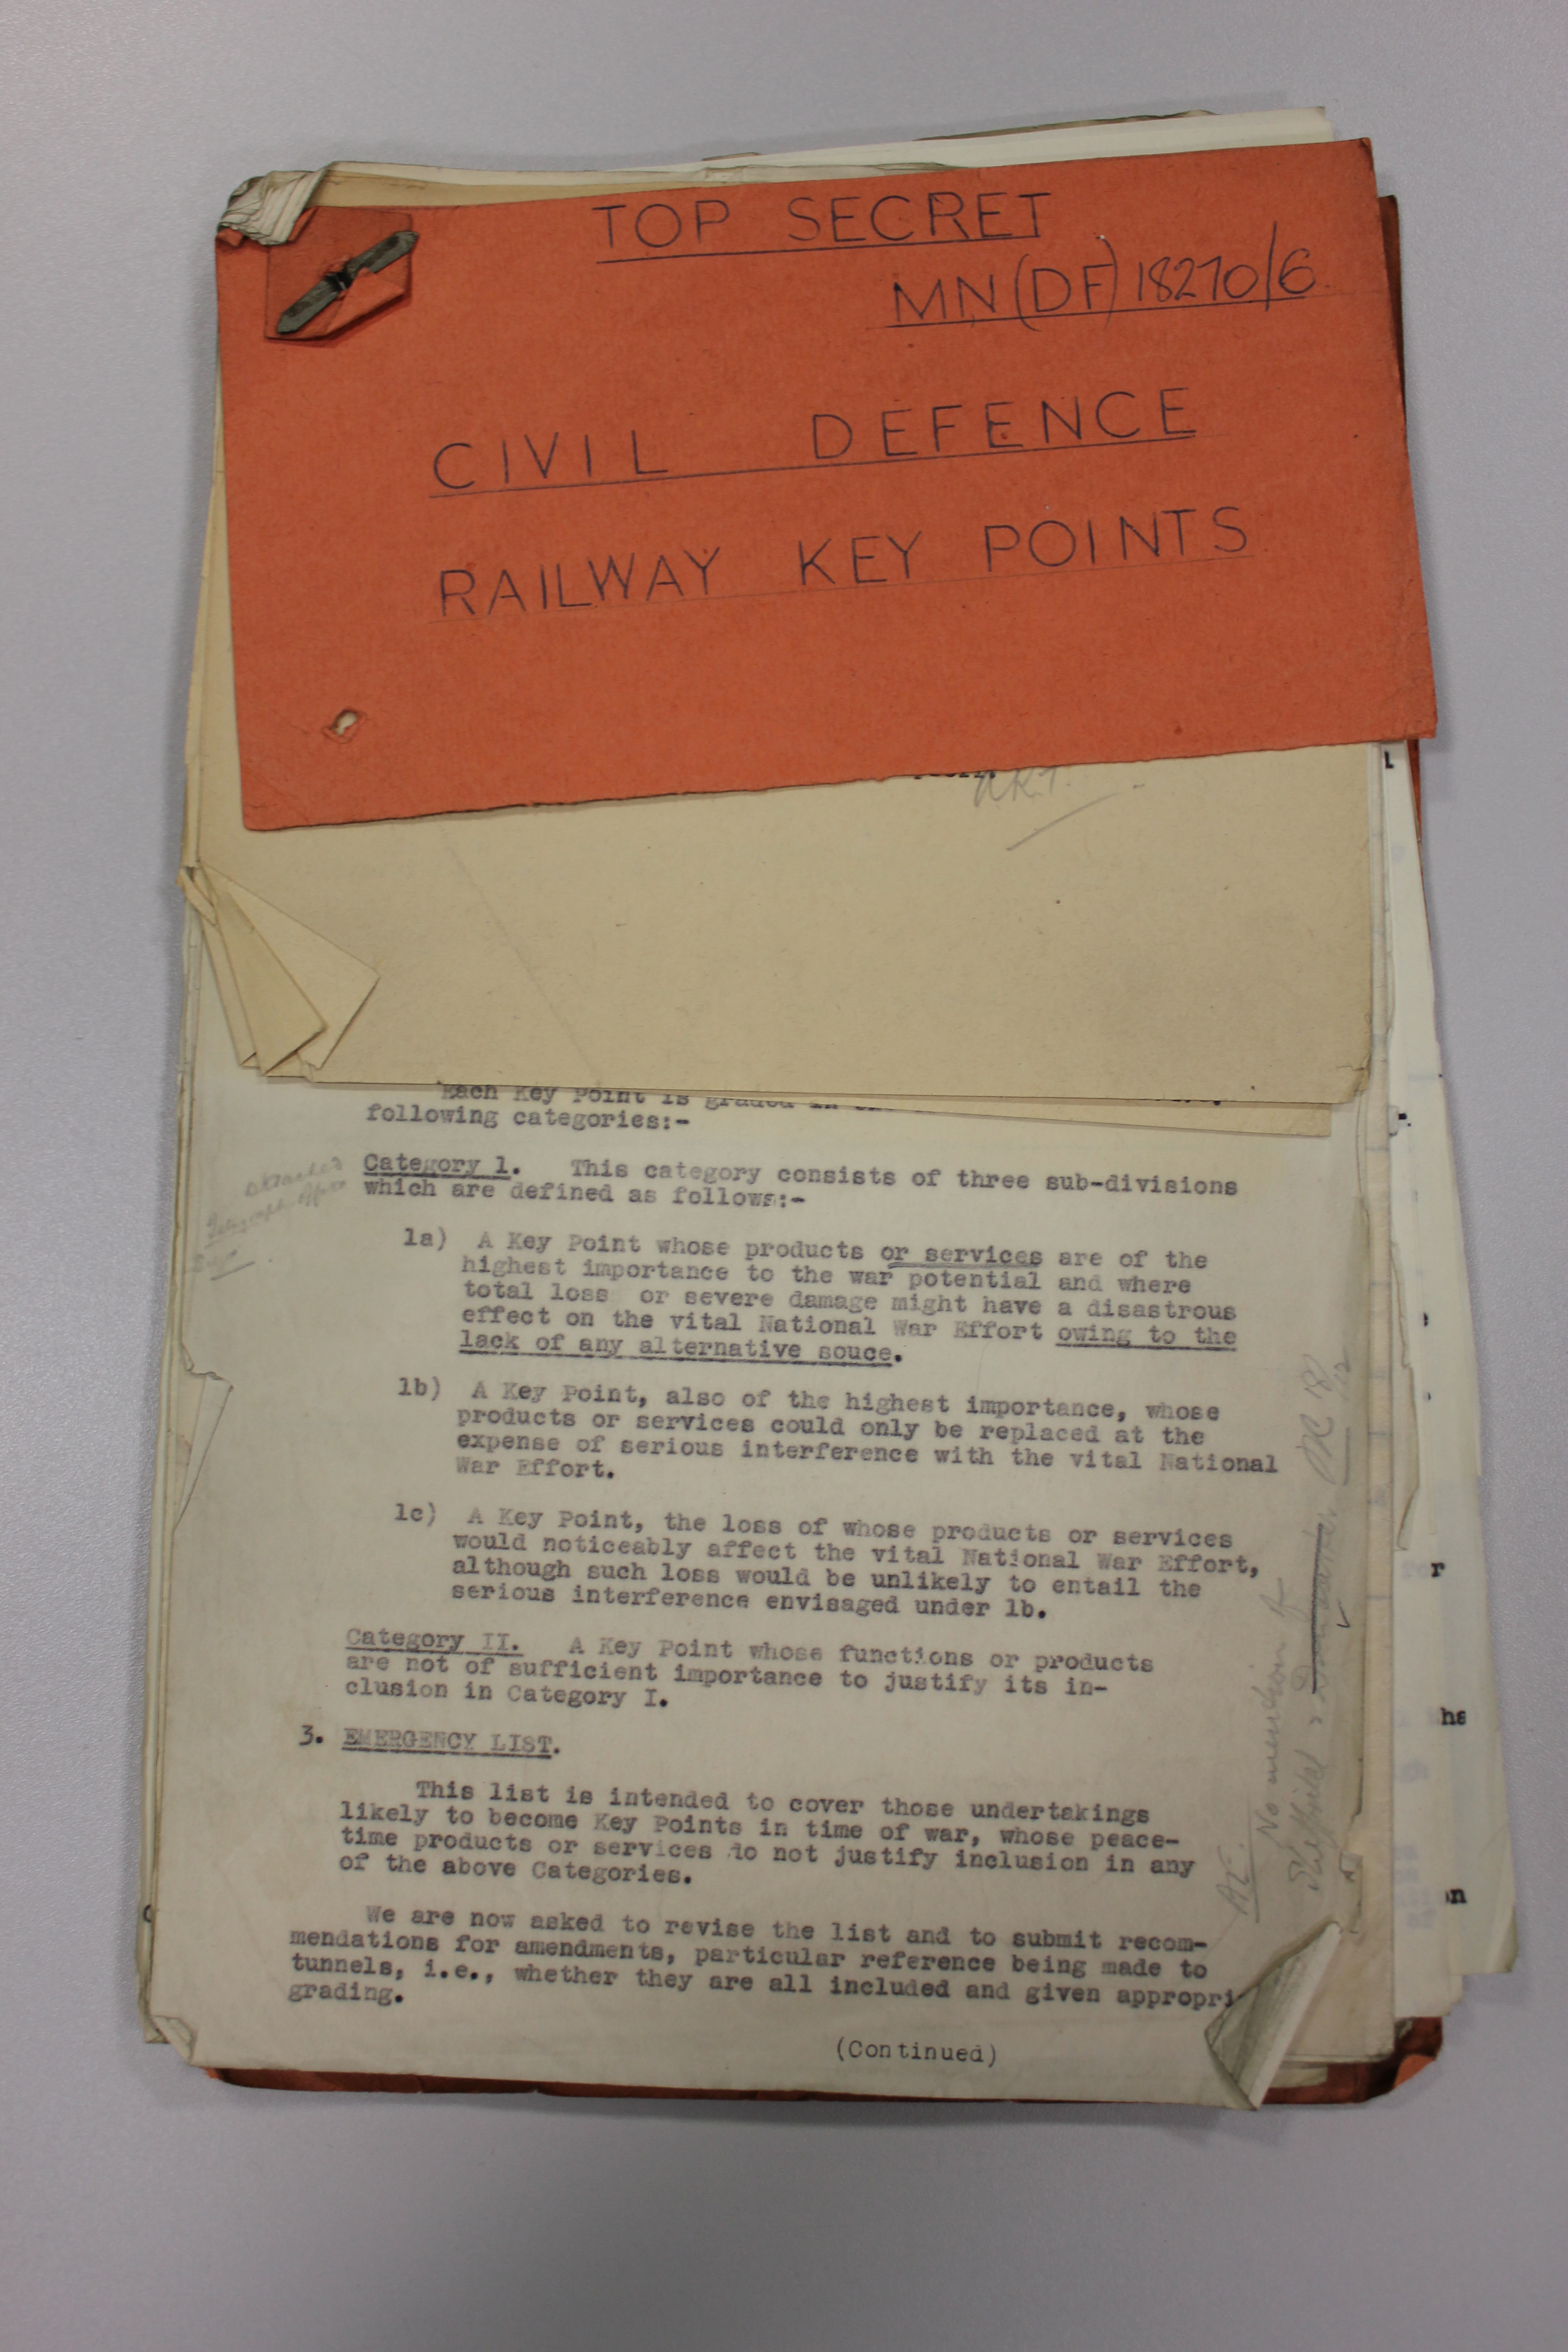 Top secret civil defence railway key points (1942 -1953)